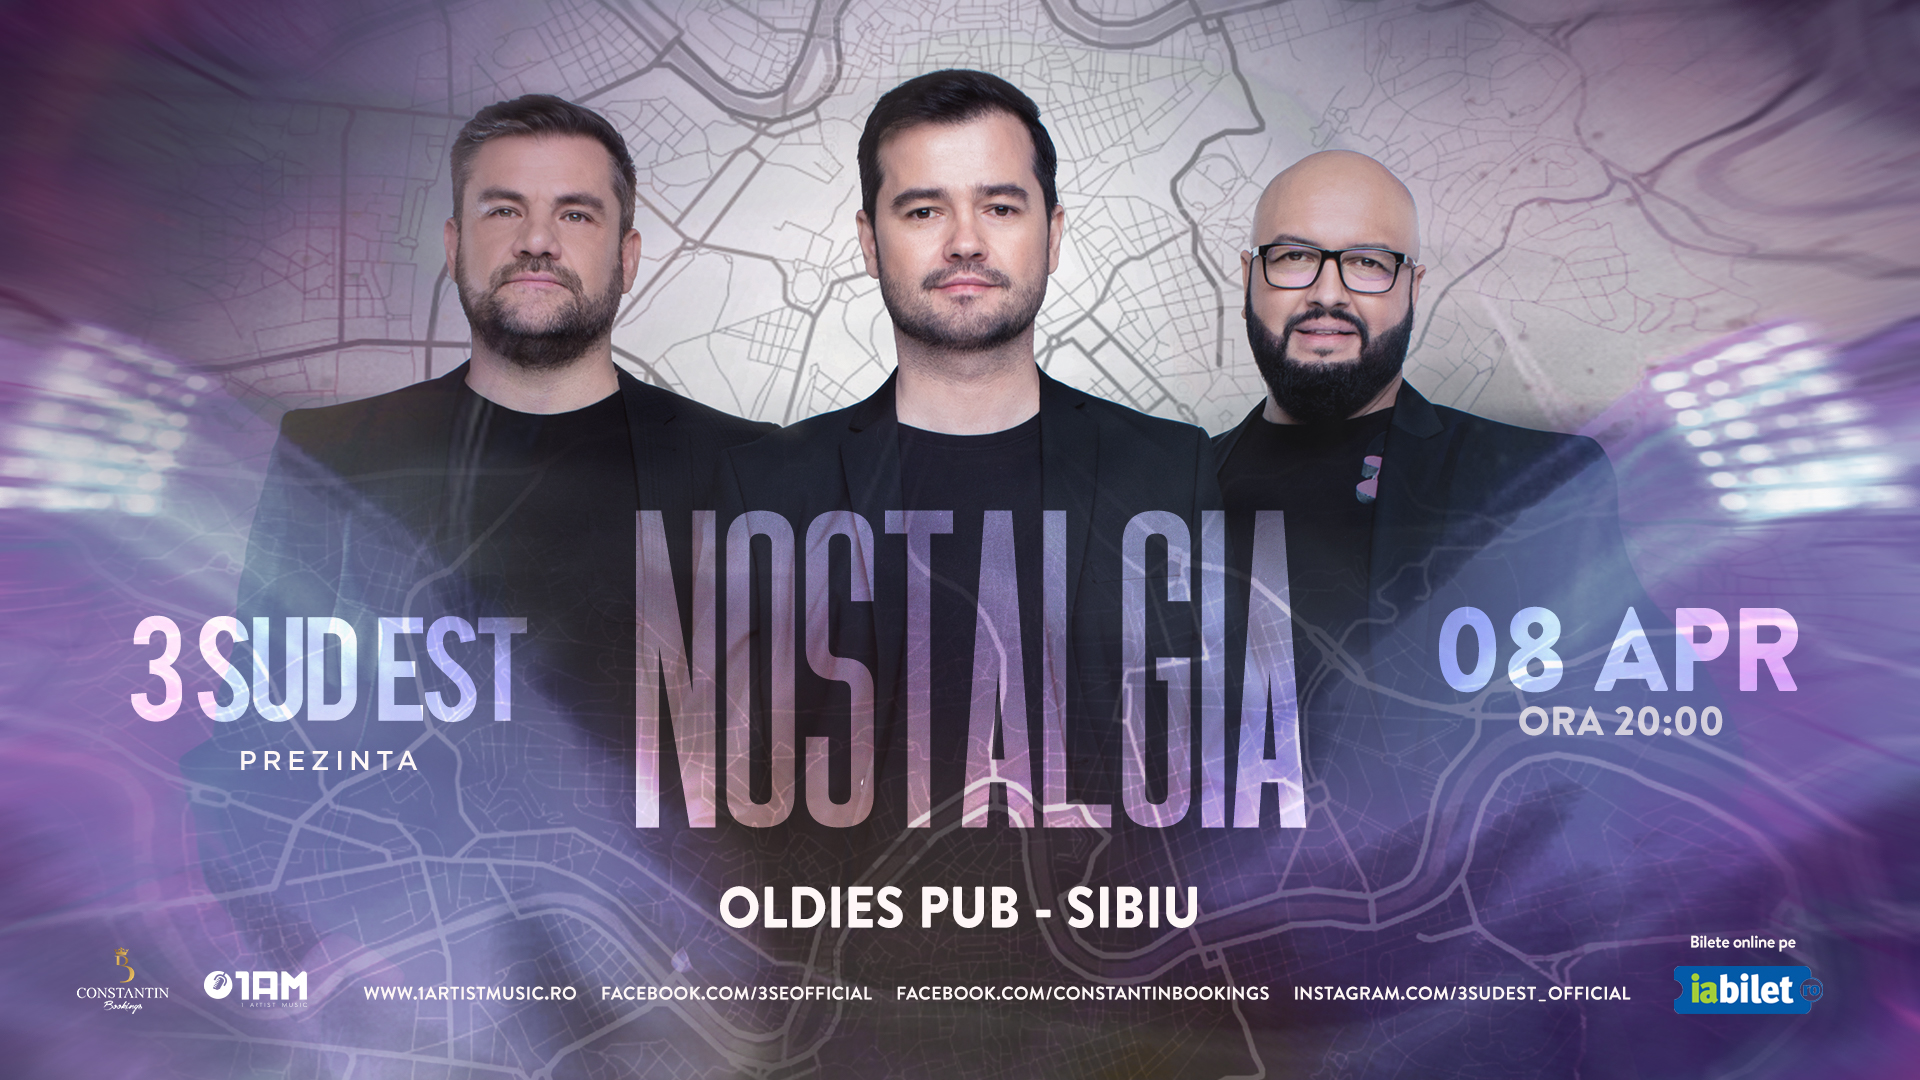 Concert 3 Sud Est - NOSTALGIA @Sibiu - Oldies Pub